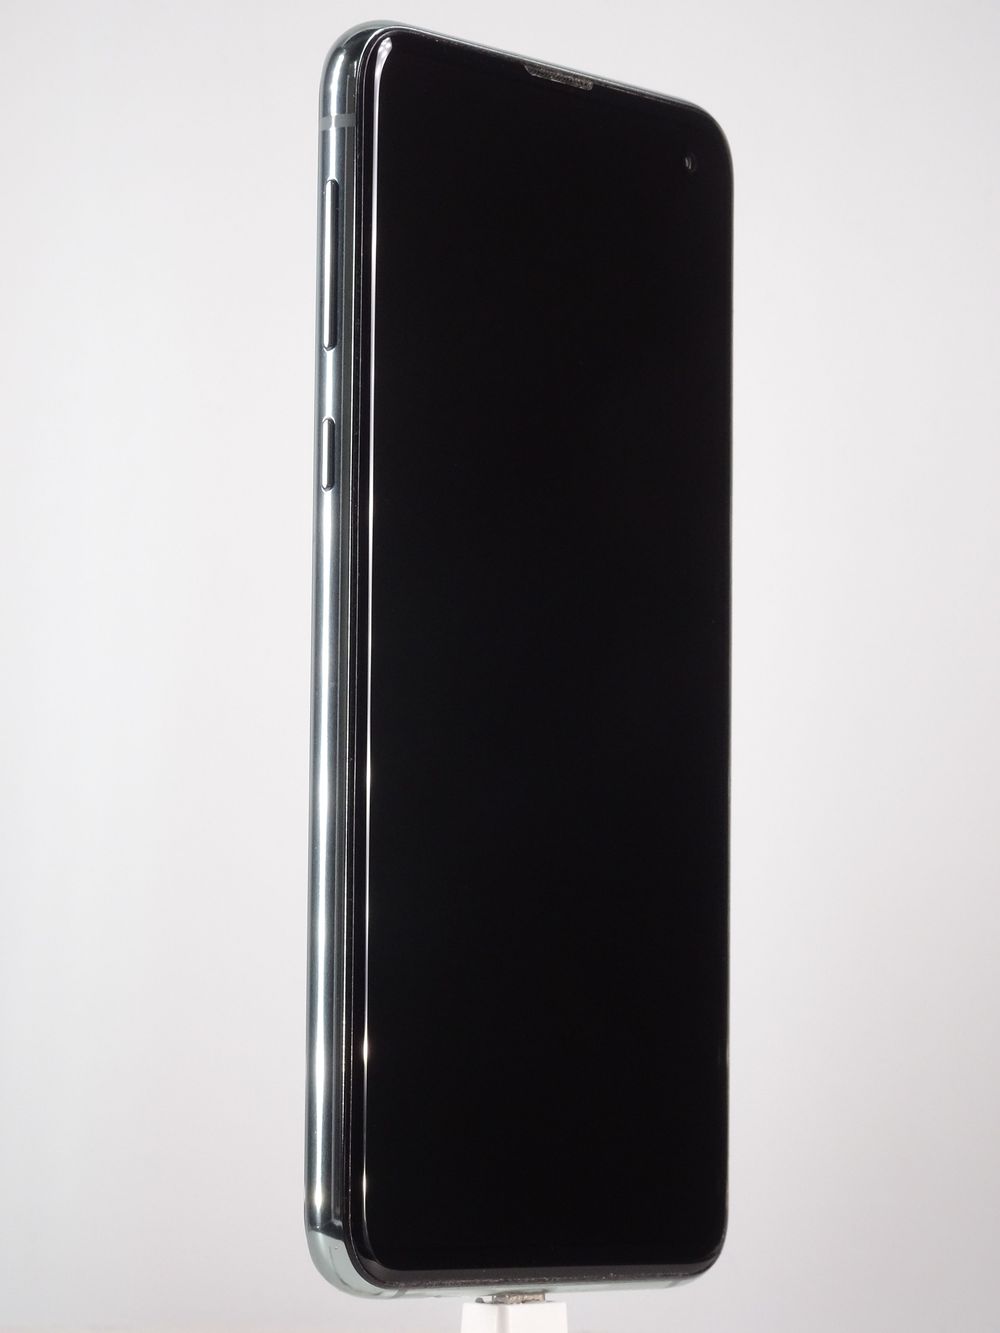 Мобилен телефон Samsung, Galaxy S10 e, 128 GB, Prism Green,  Като нов